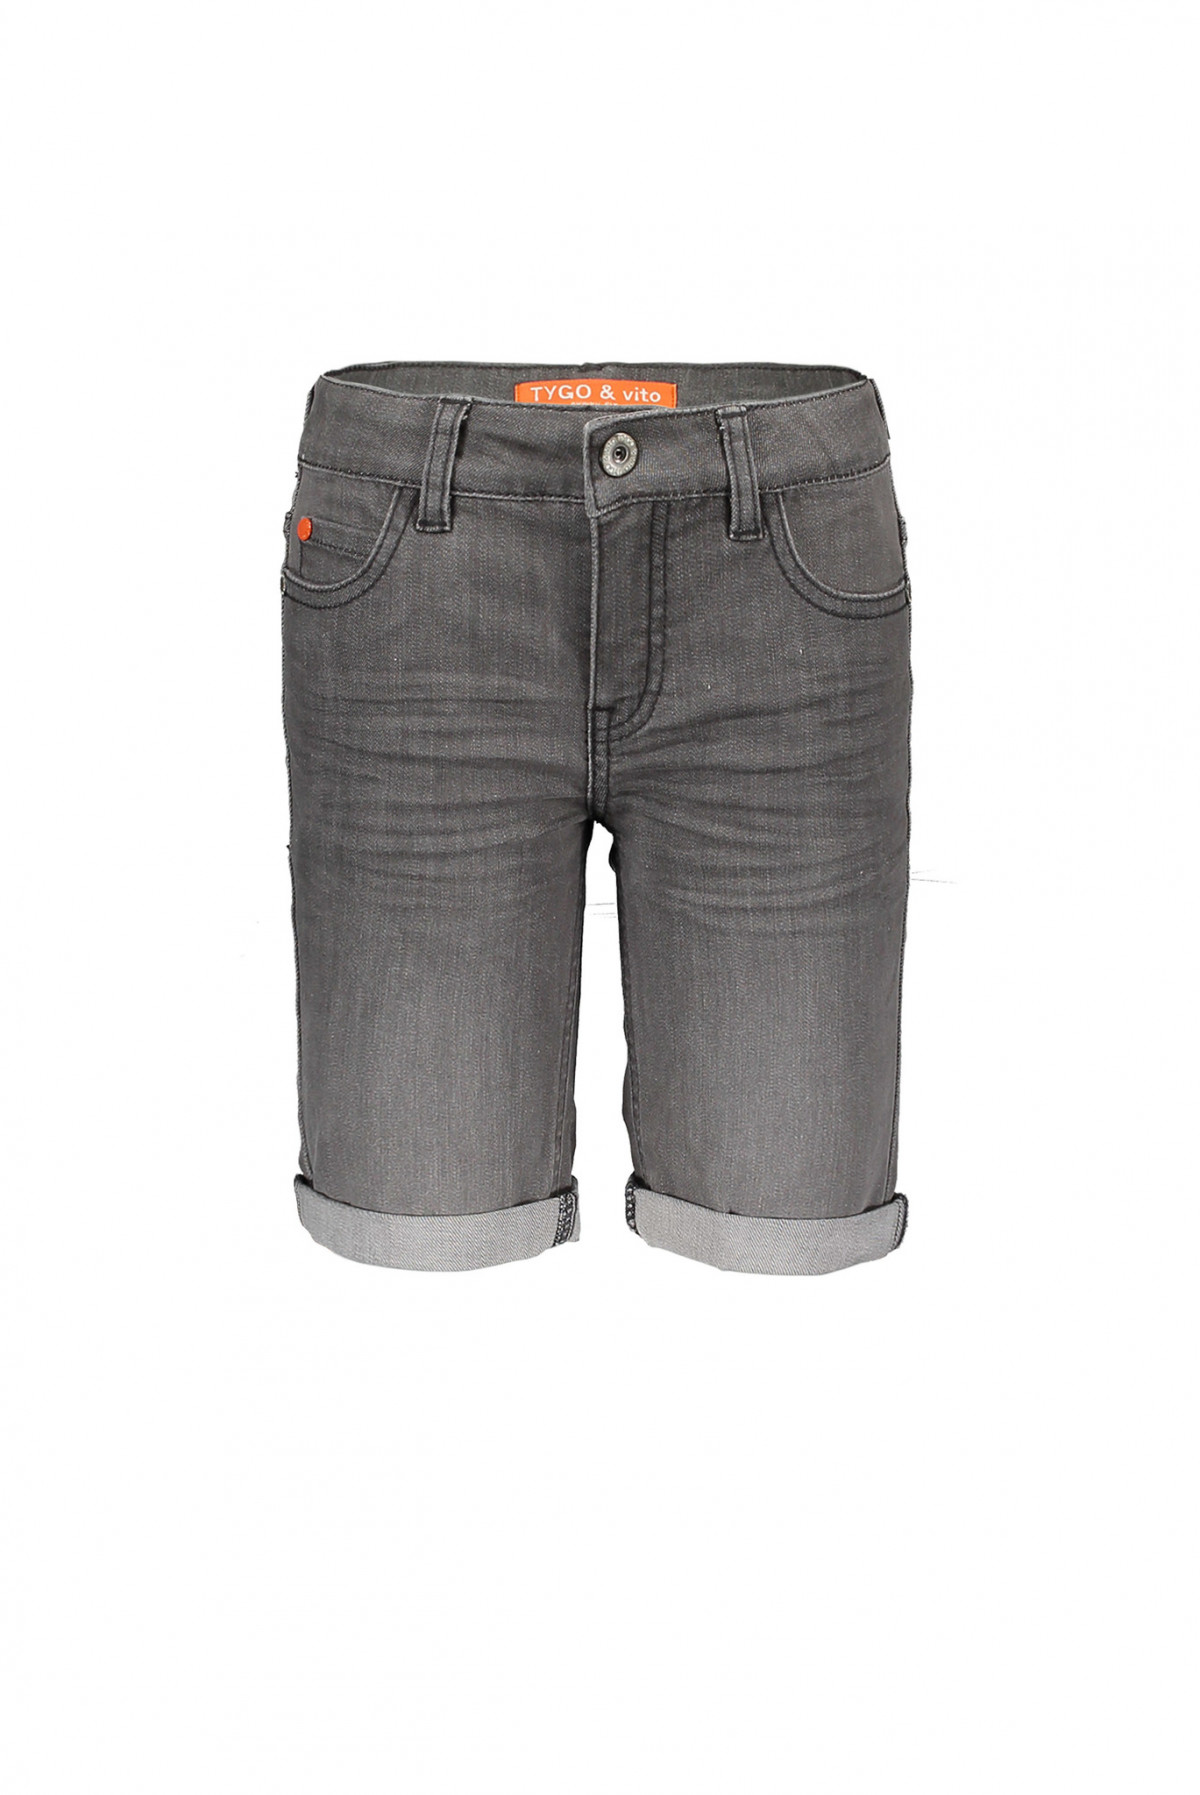 Short jeans gris - Boutique Toup'tibou - photo 6